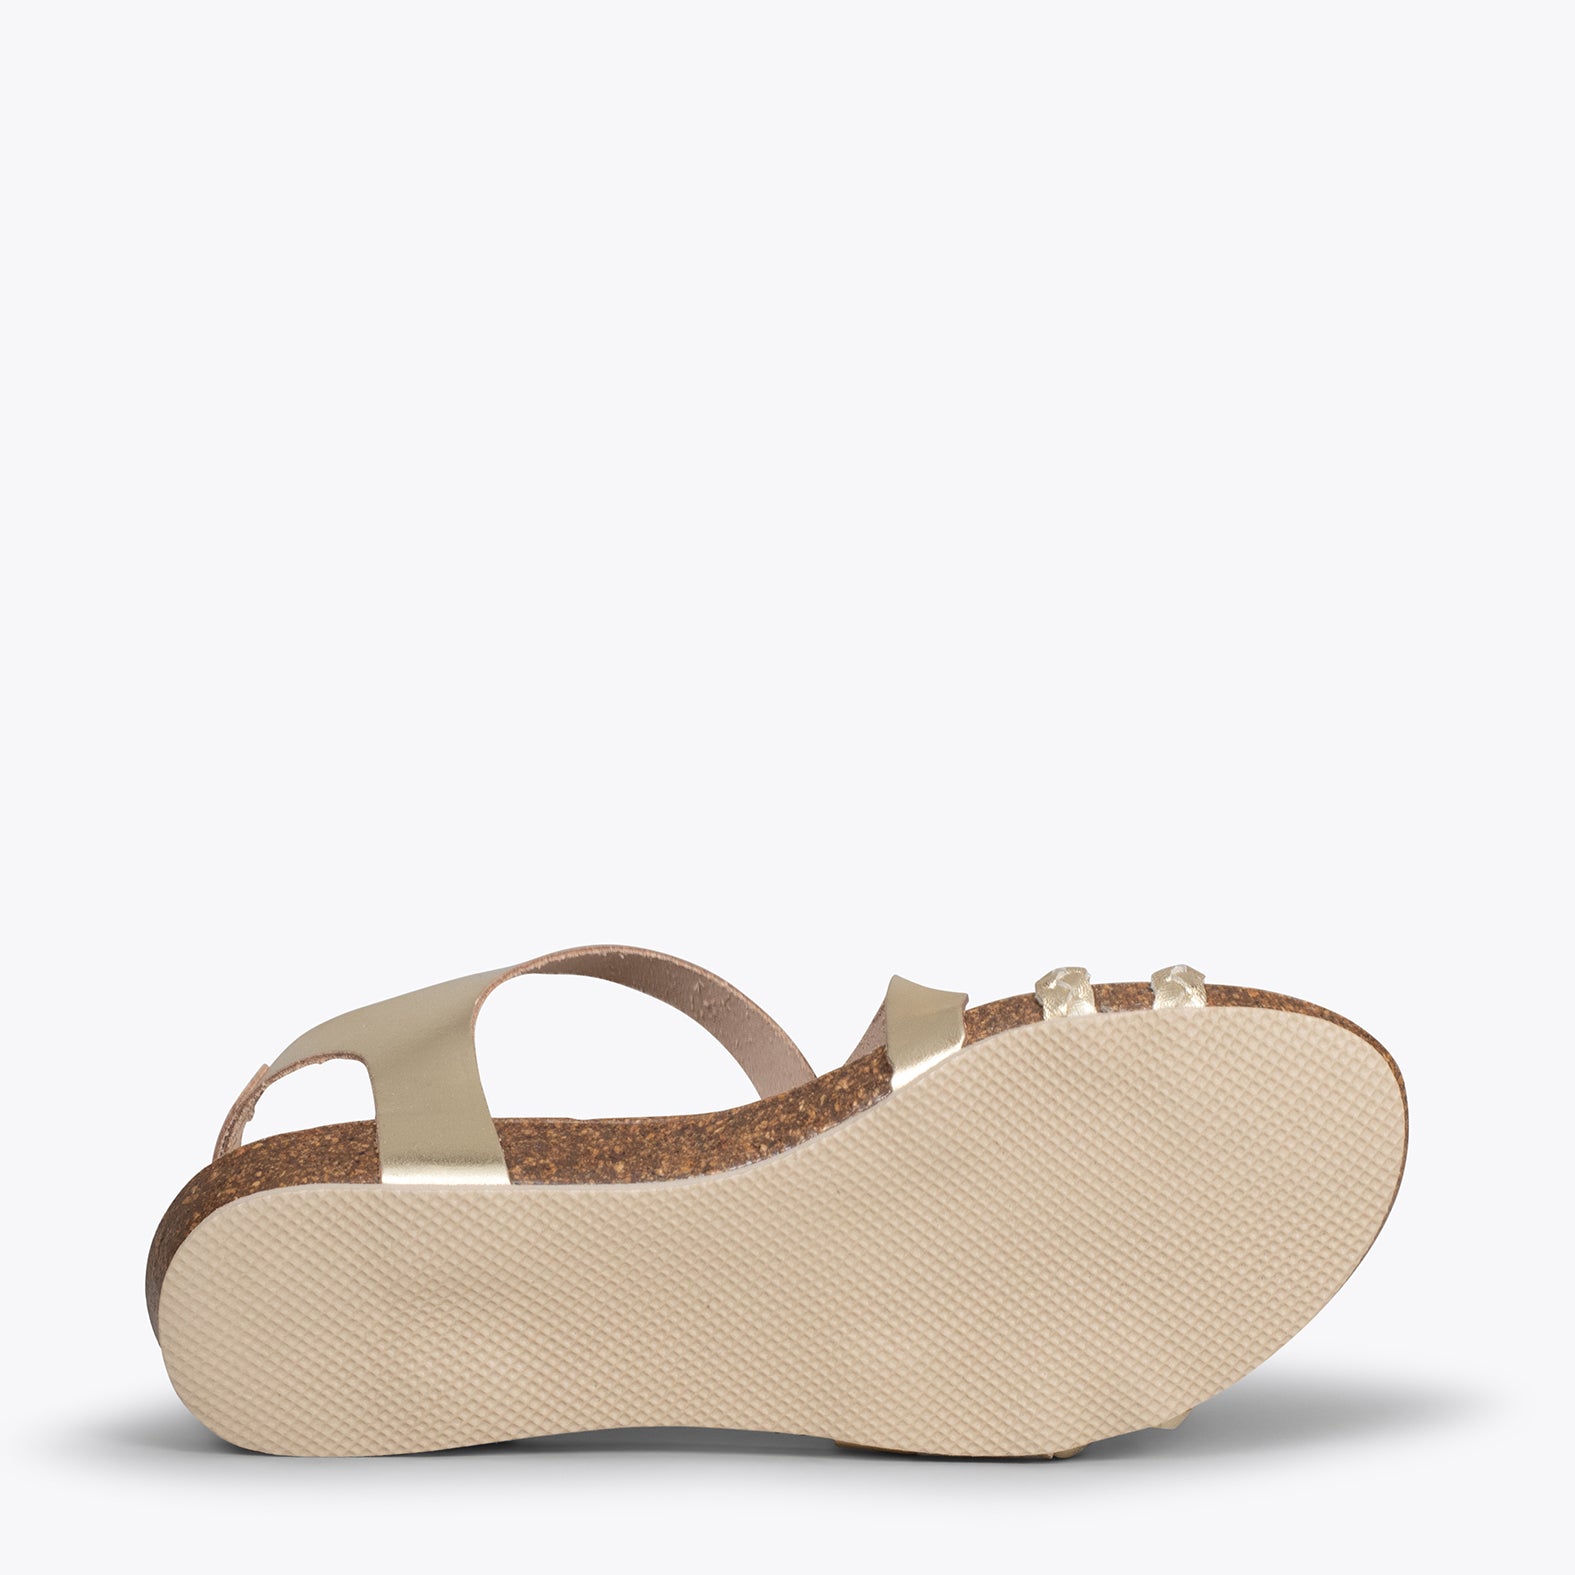 INDIE – GOLD BIO sandals with straps